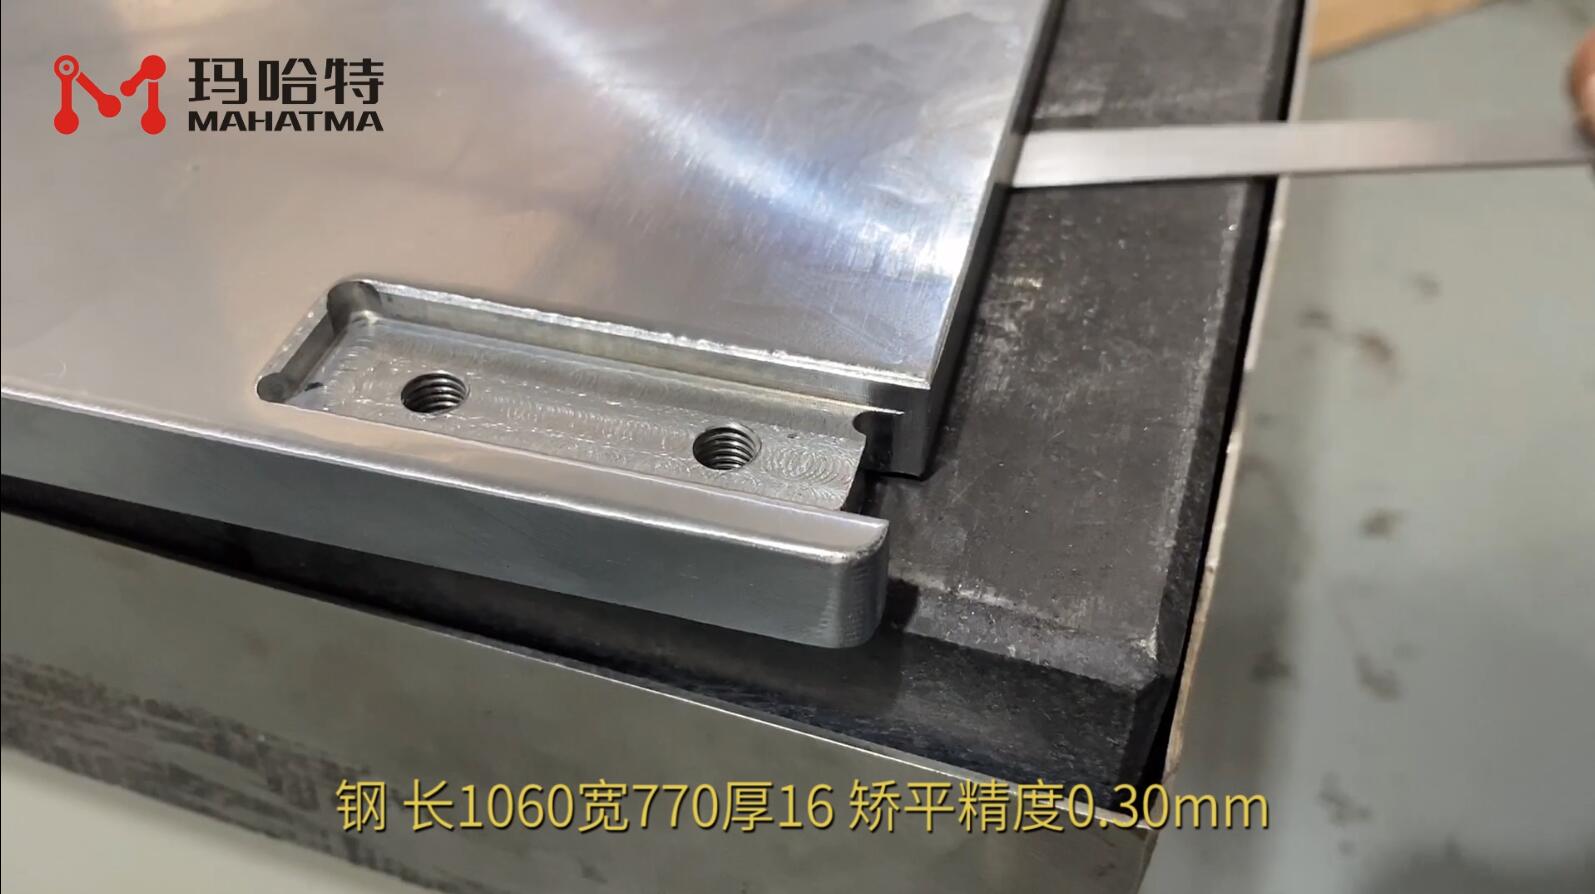 钢 MHT120-1300 长方形 长1060宽770厚16mm